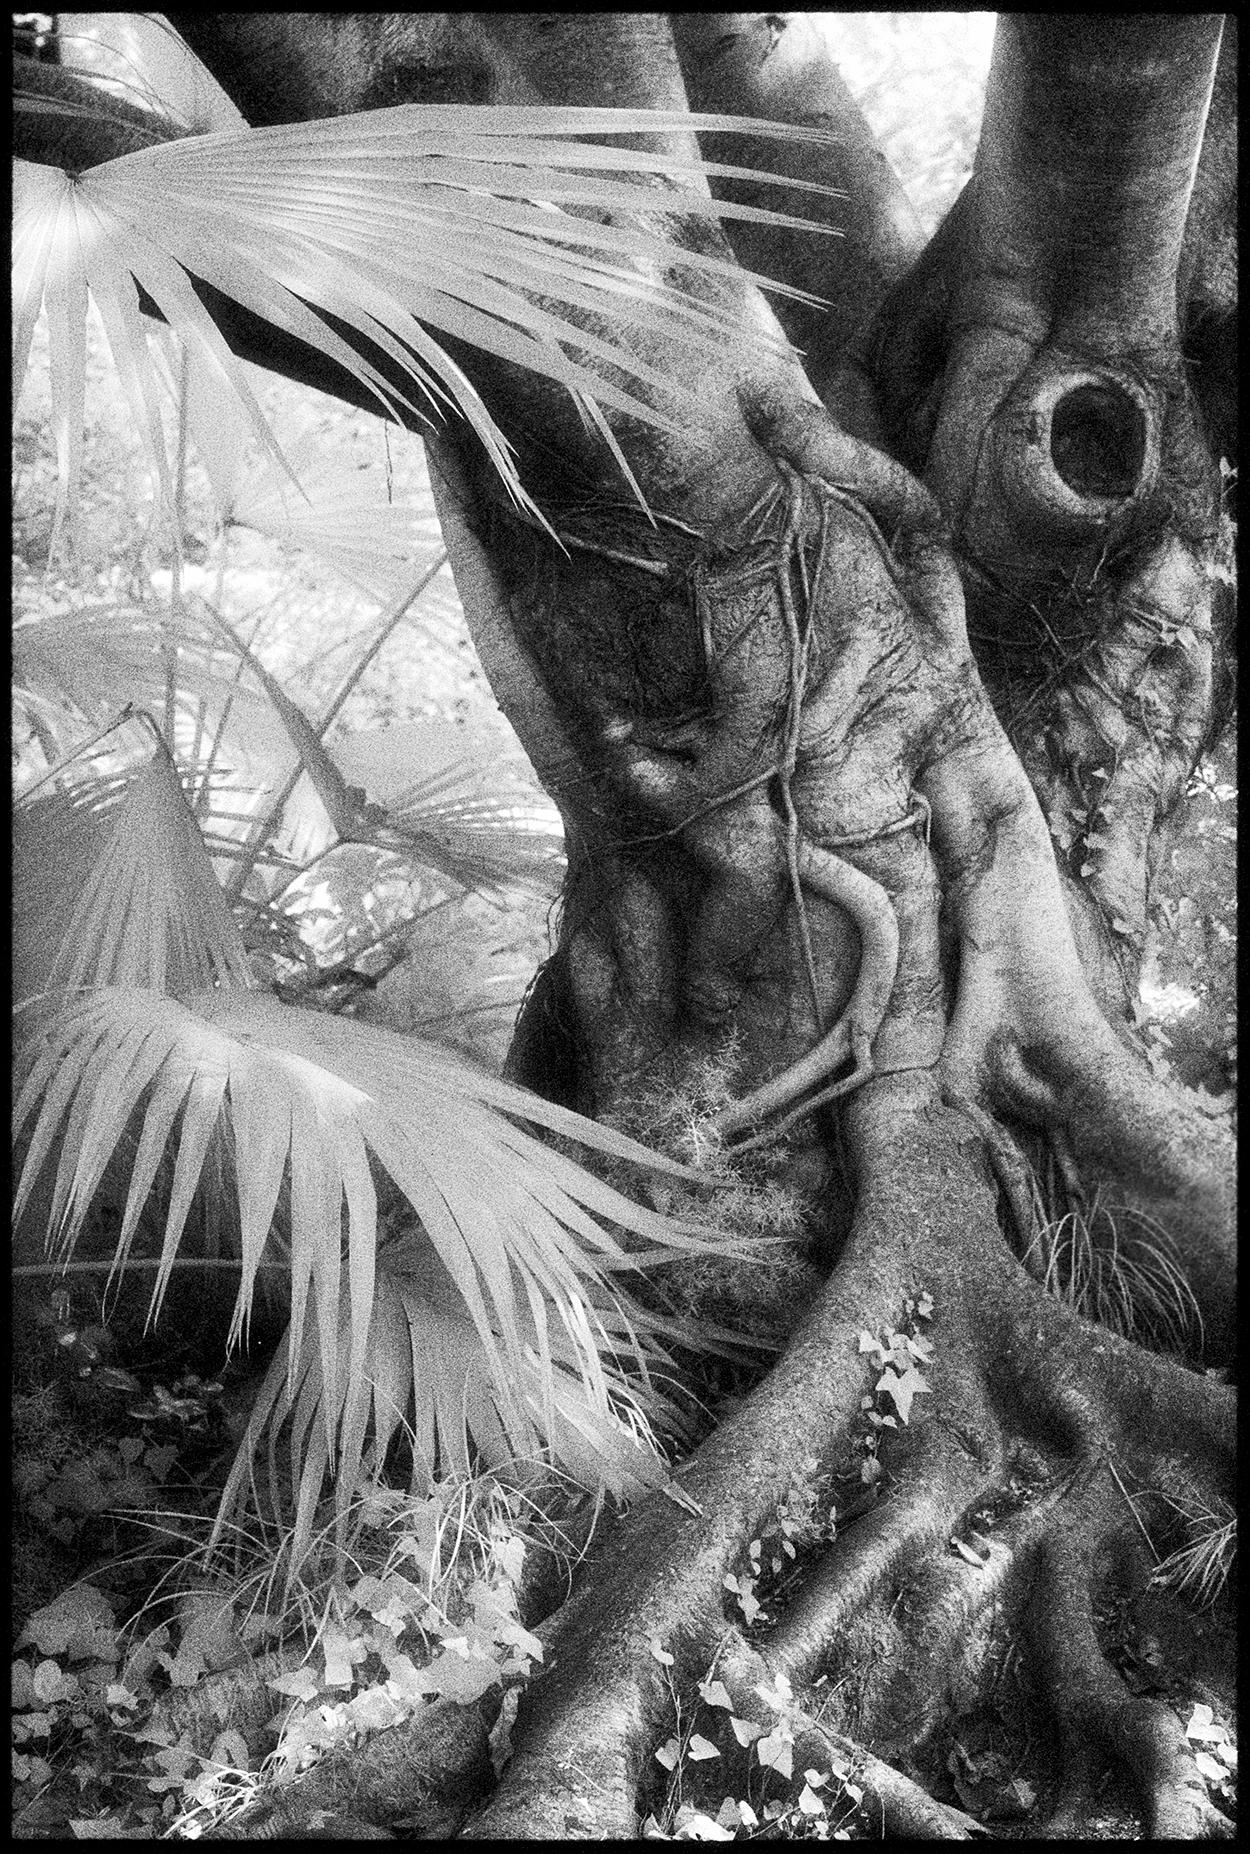 Landscape Photograph Edward Alfano - Chengdu, Chine - Photographie en noir et blanc d'un paysage d'arbre de banyan avec palmiers